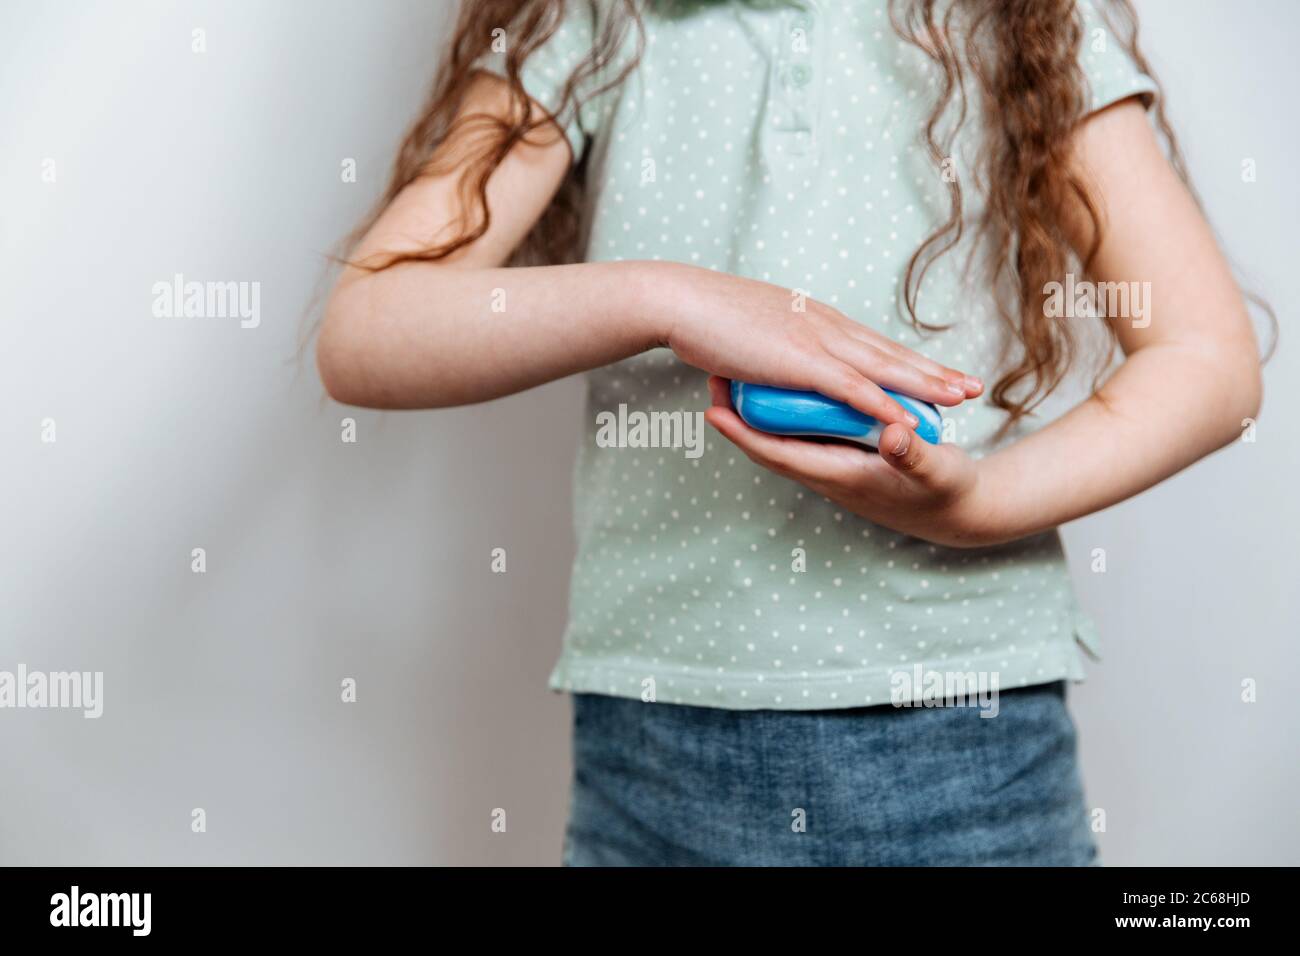 Une petite fille utilise du savon désinfectant pour les mains. Prévention et contrôle des infections à coronavirus COVID-19. Concept d'hygiène et de soins de santé Banque D'Images